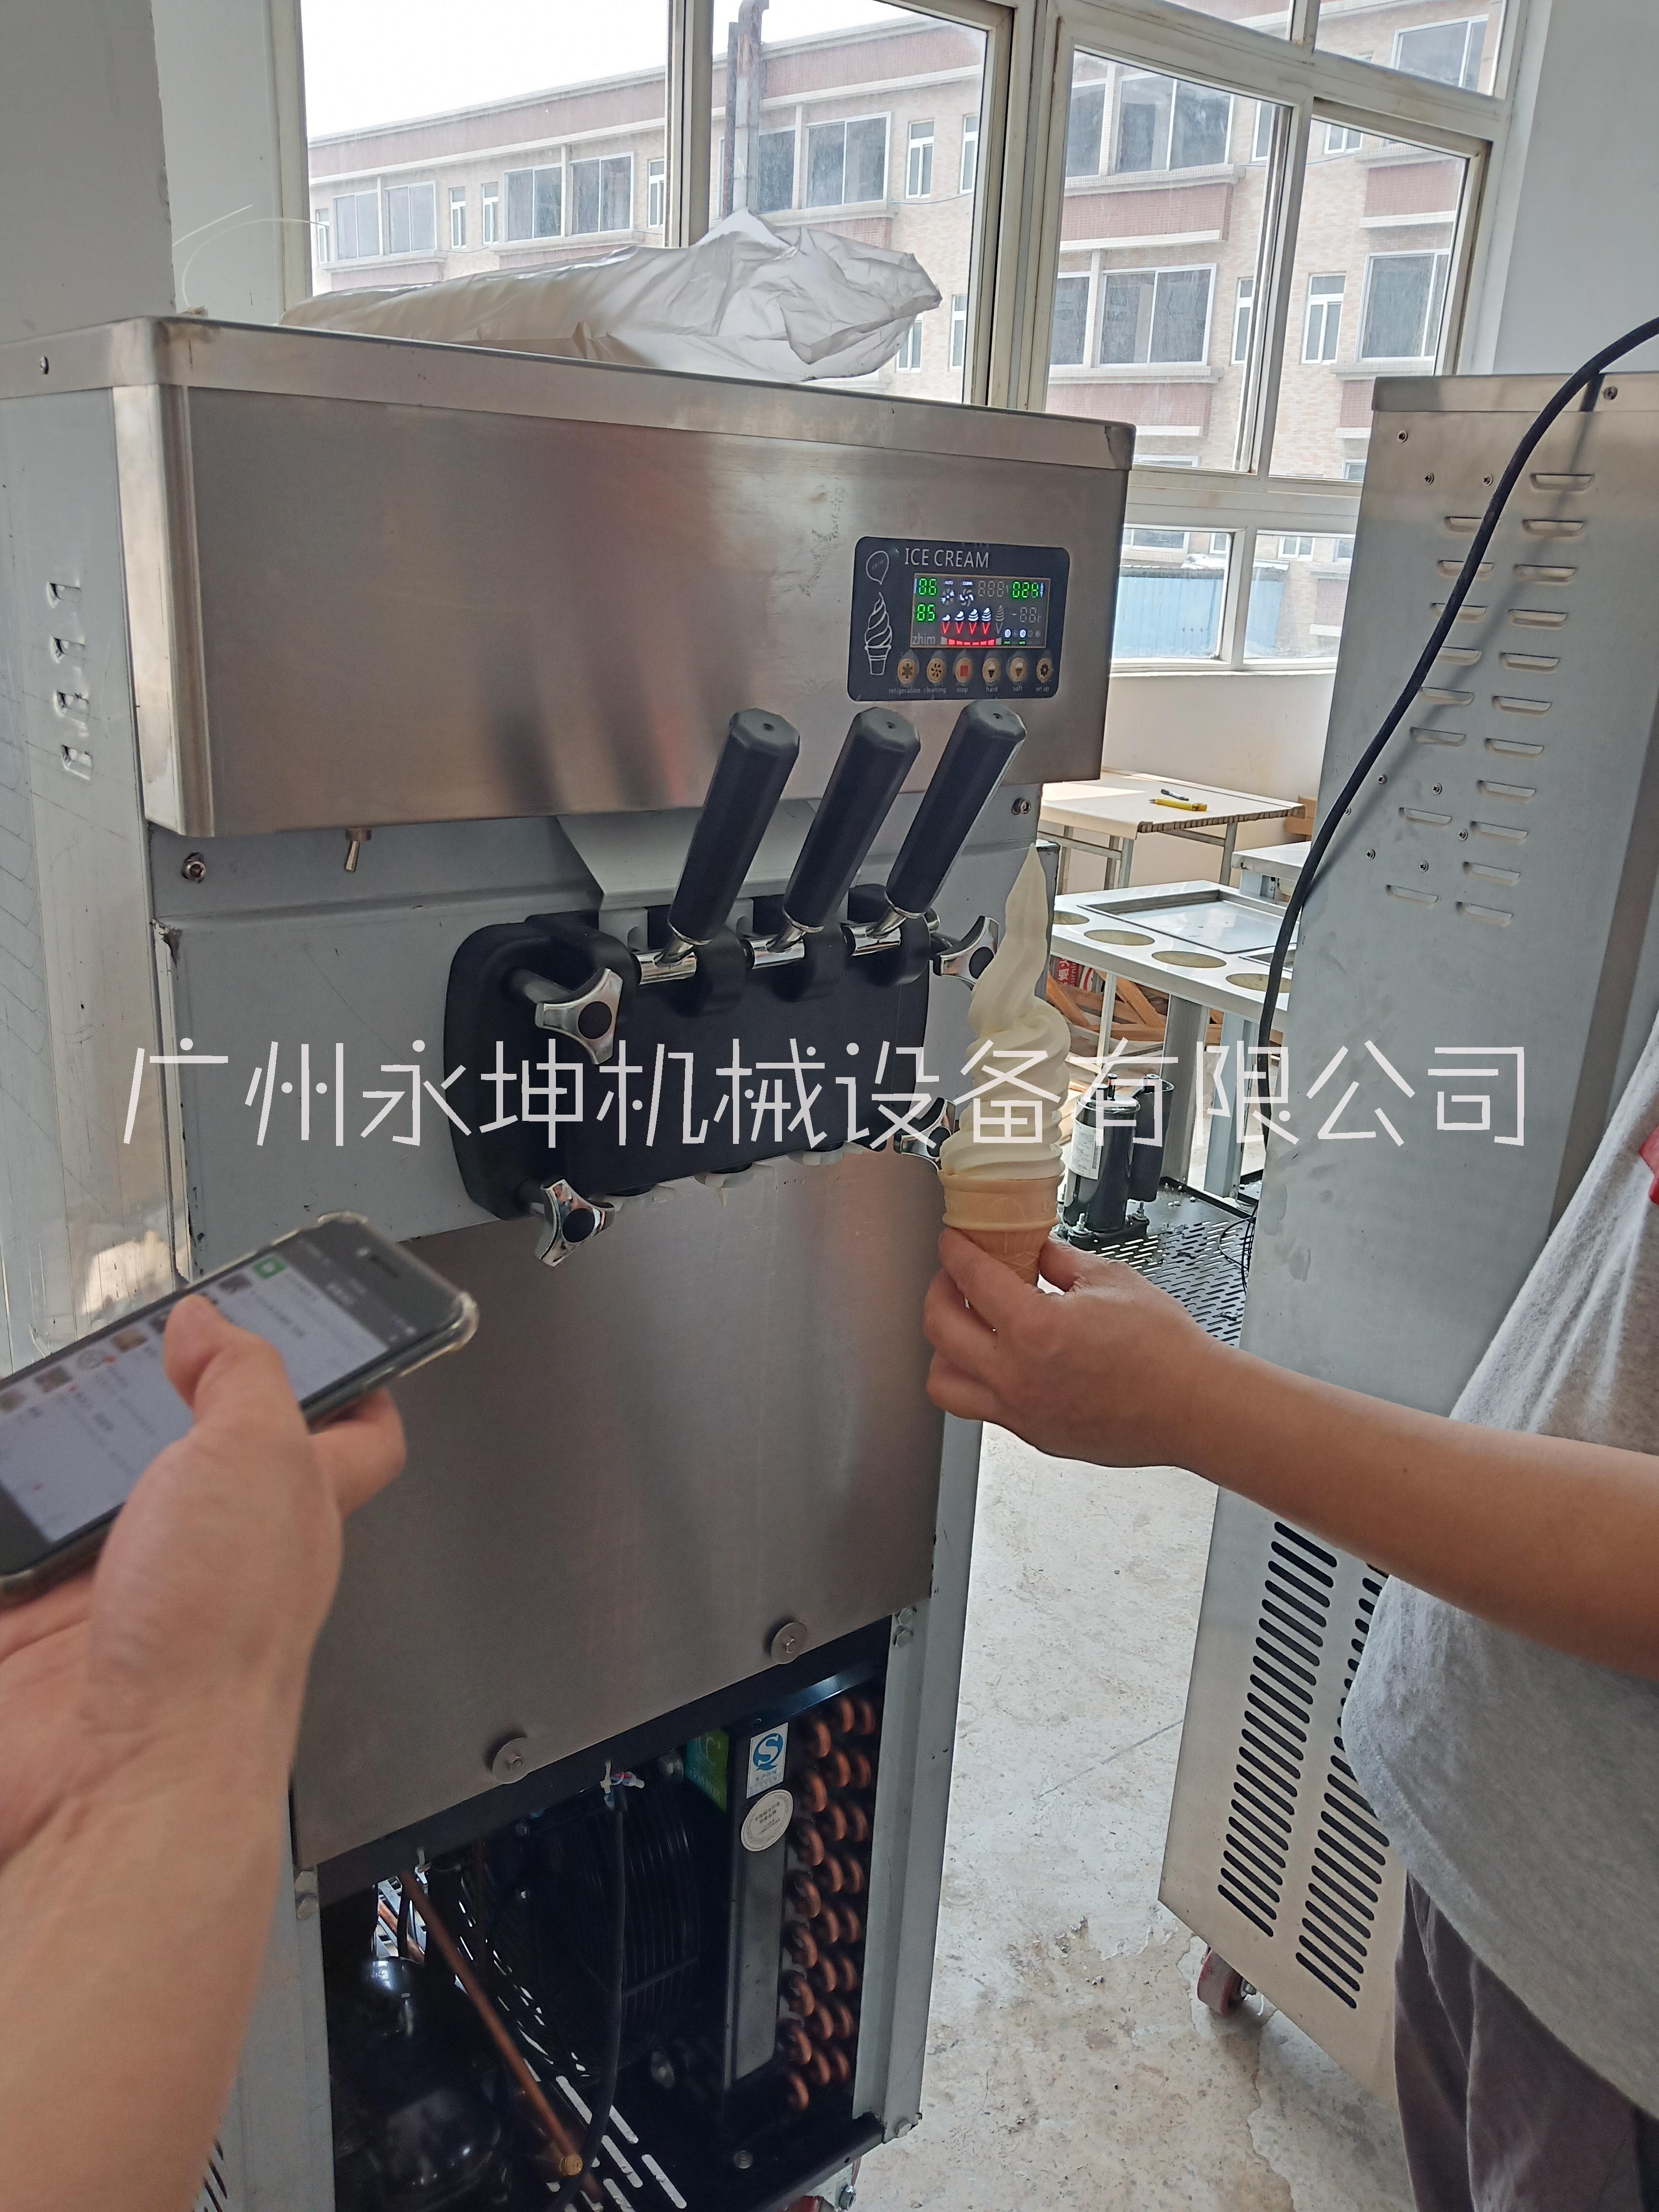 贵州立式冰淇淋机定制、批发、价格、销售【广州永坤机械设备有限公司】